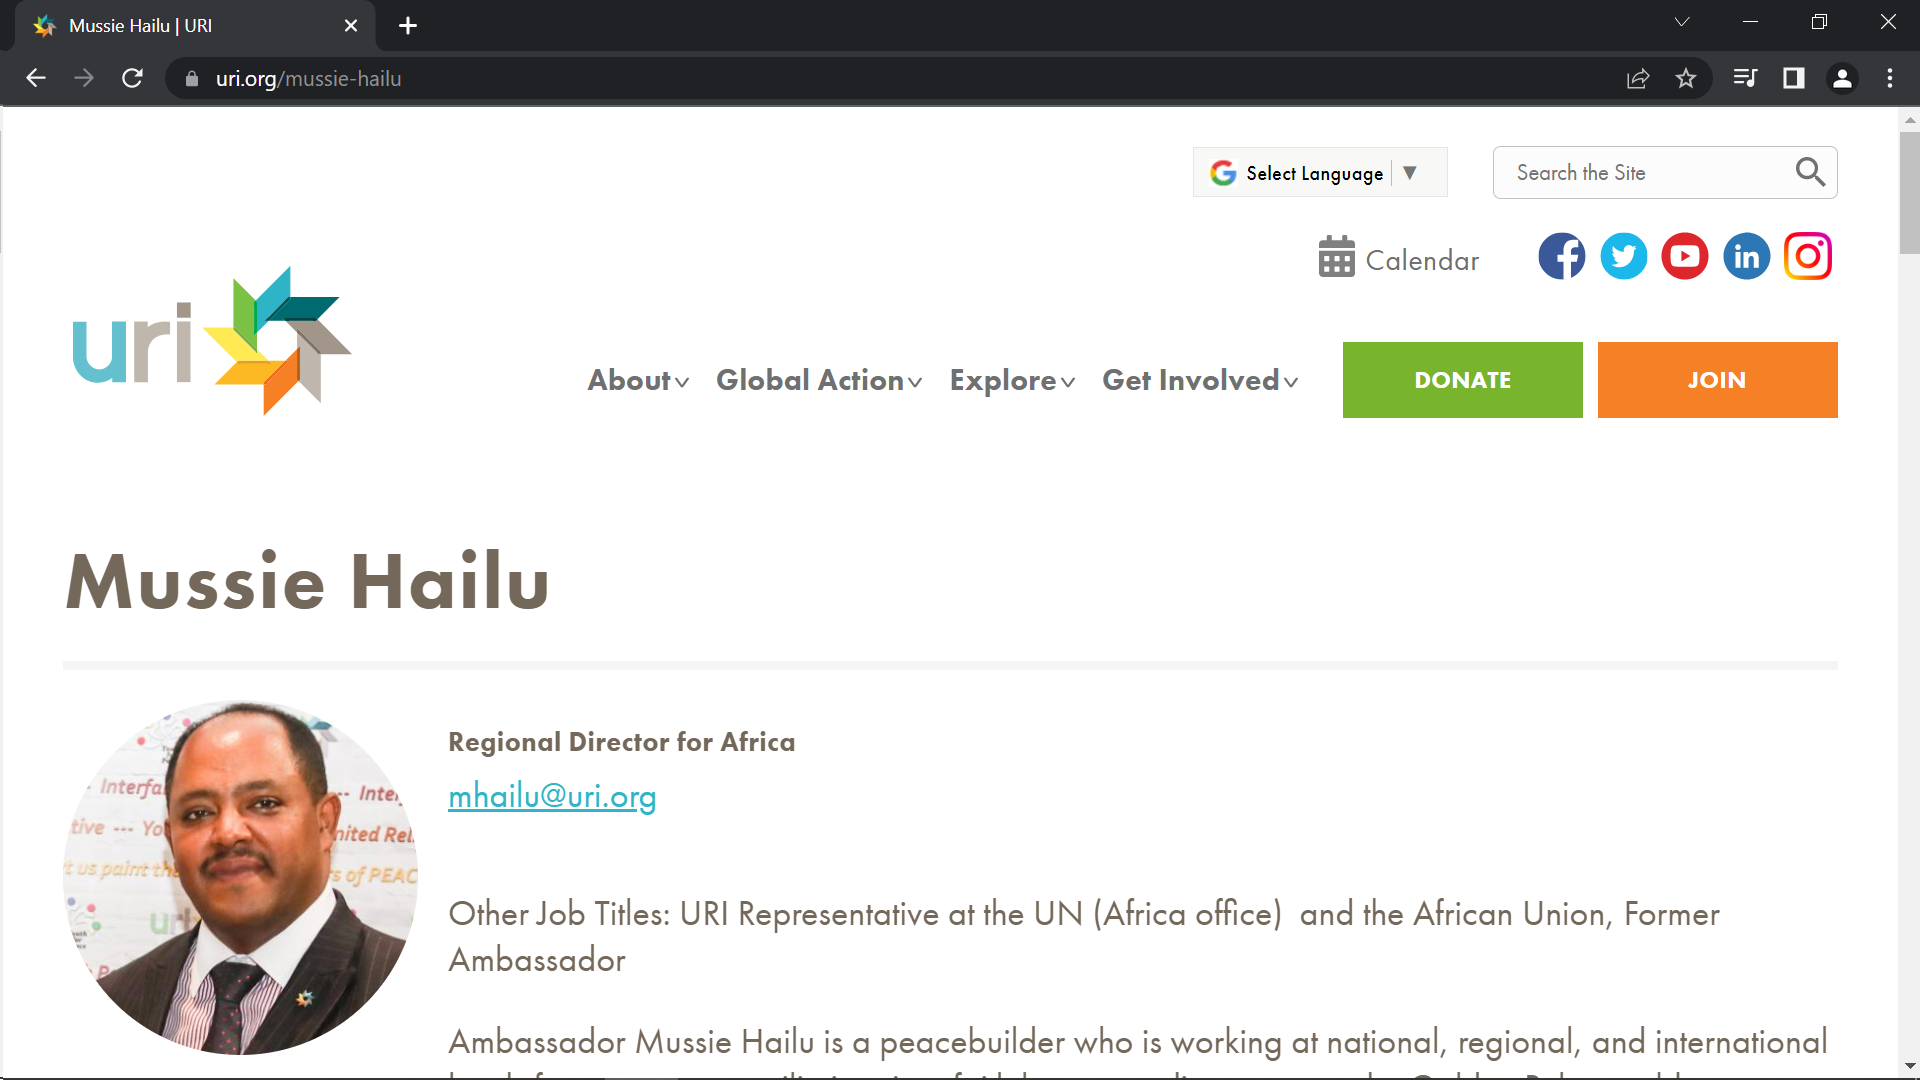 Ambassador Mussie Hailu